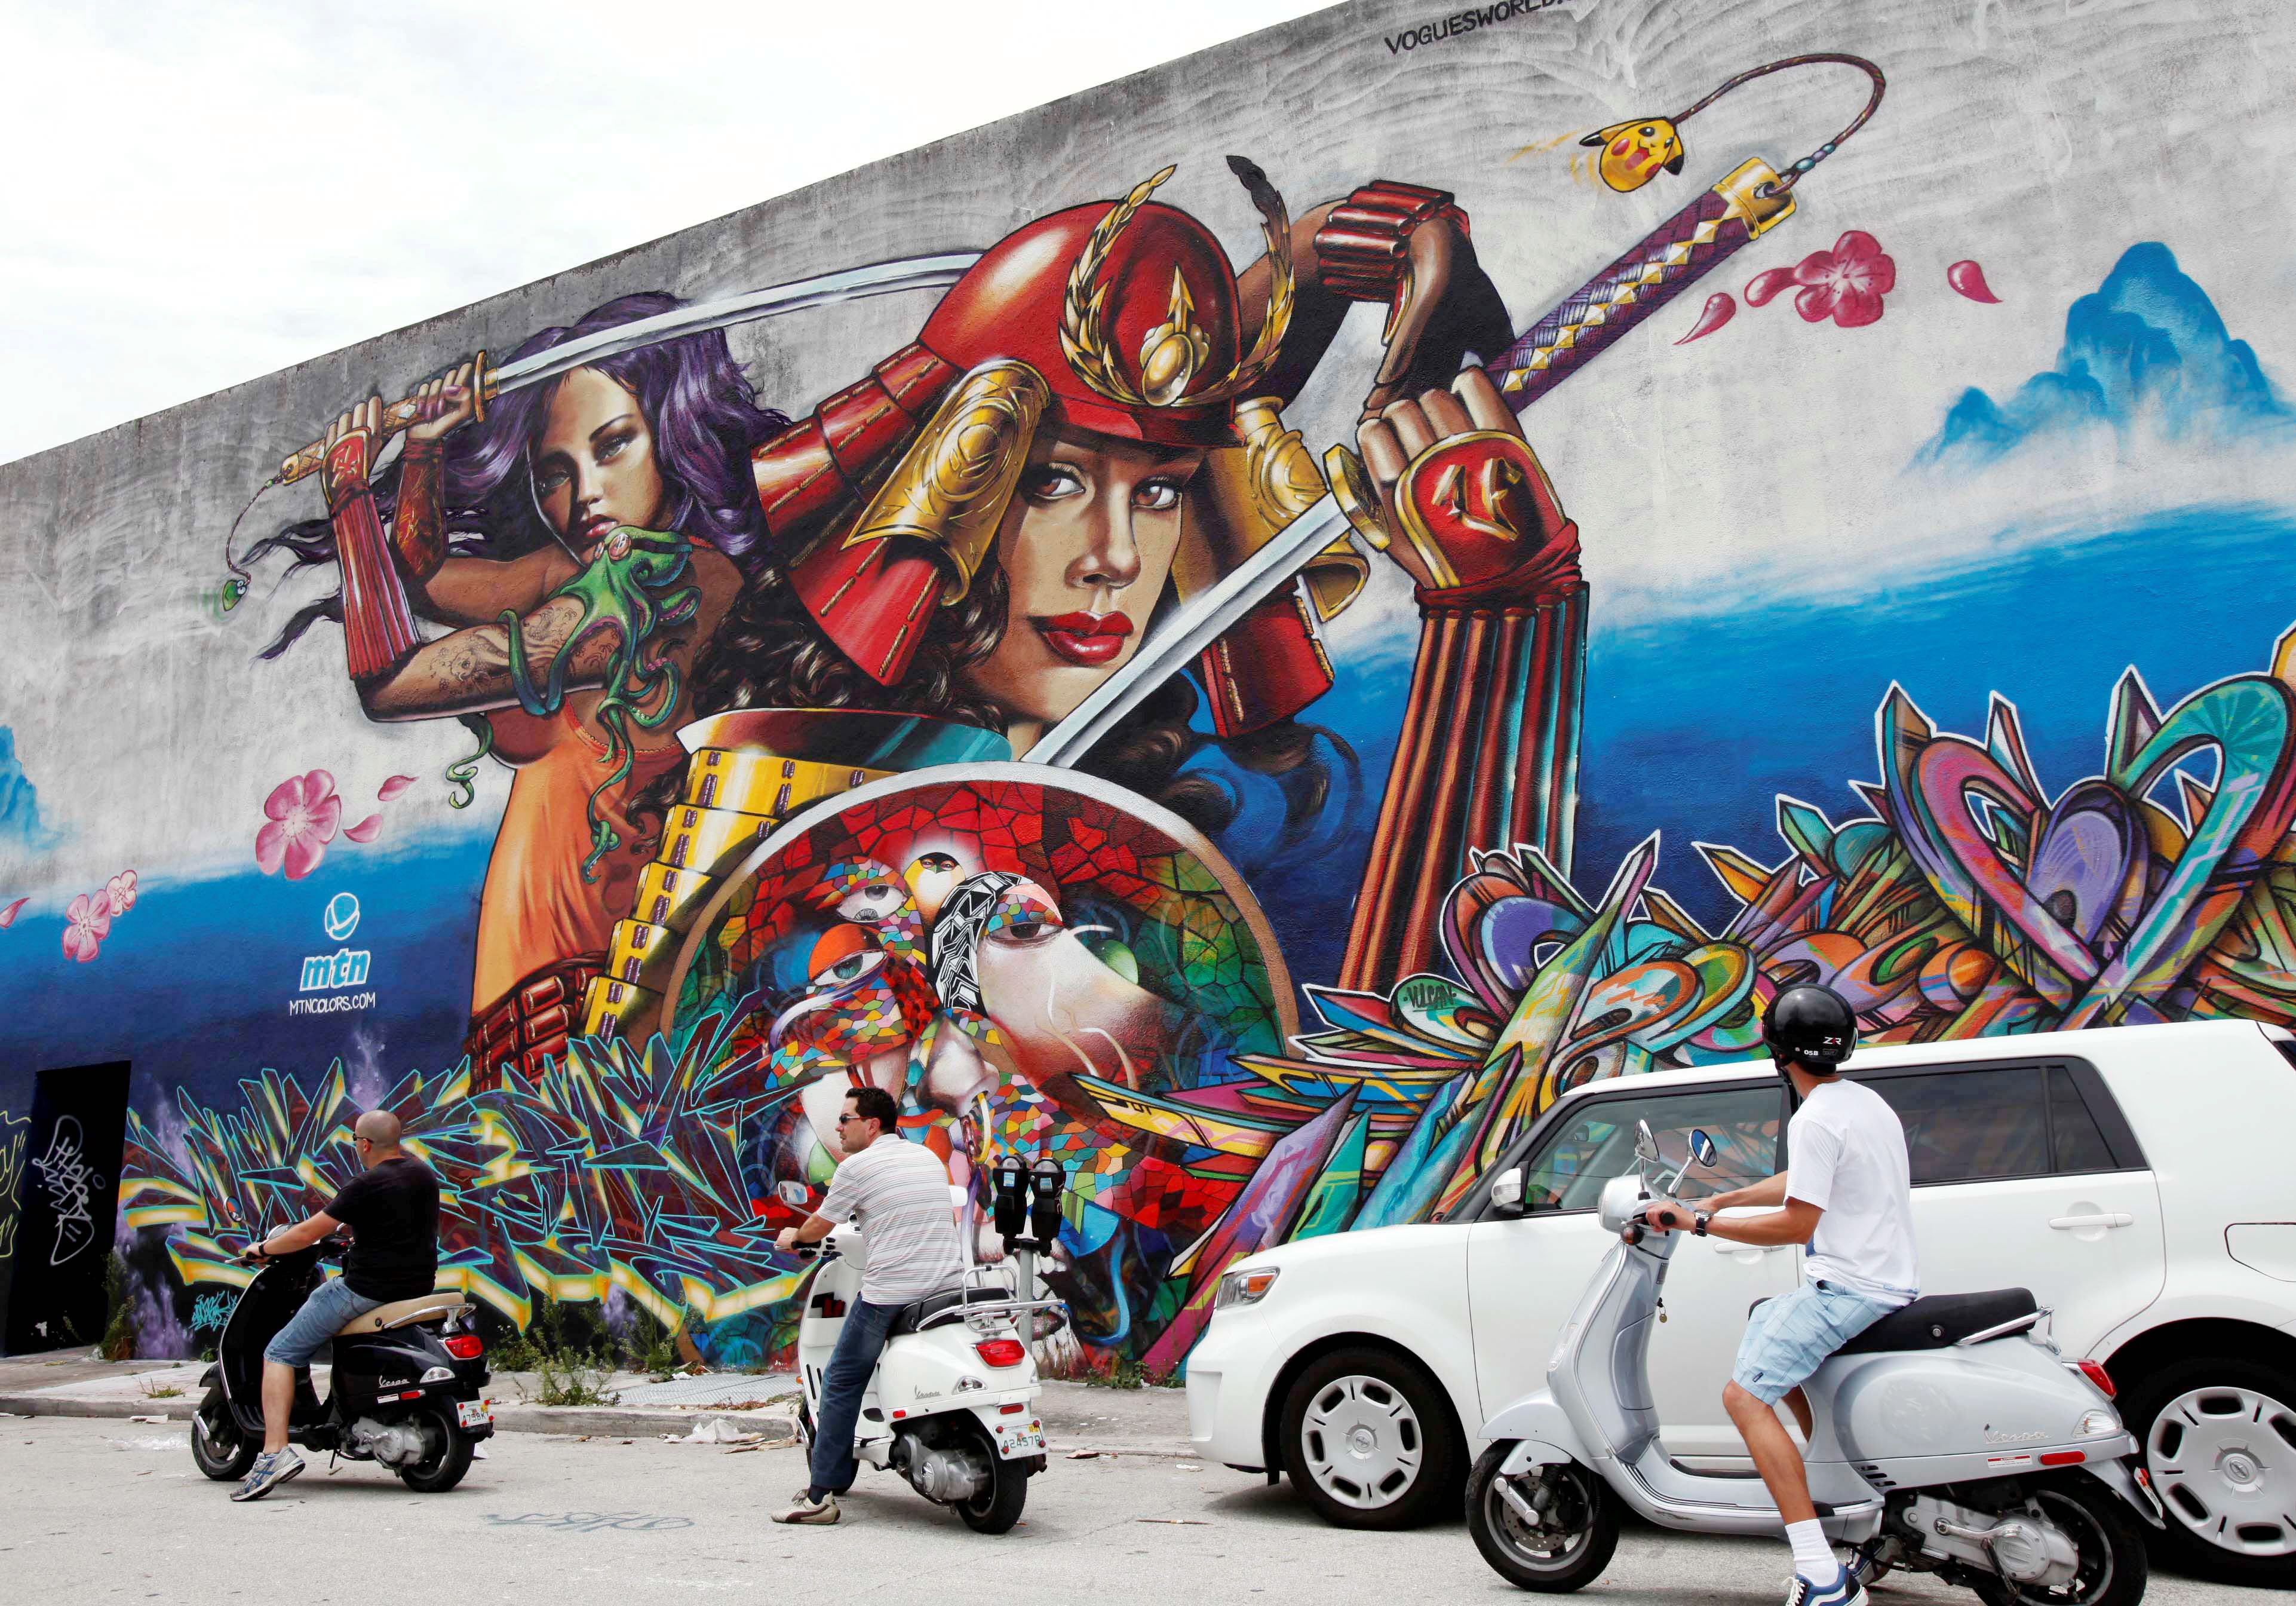 Miami Graffiti Artists Free To Leave Their Mark Washington Times